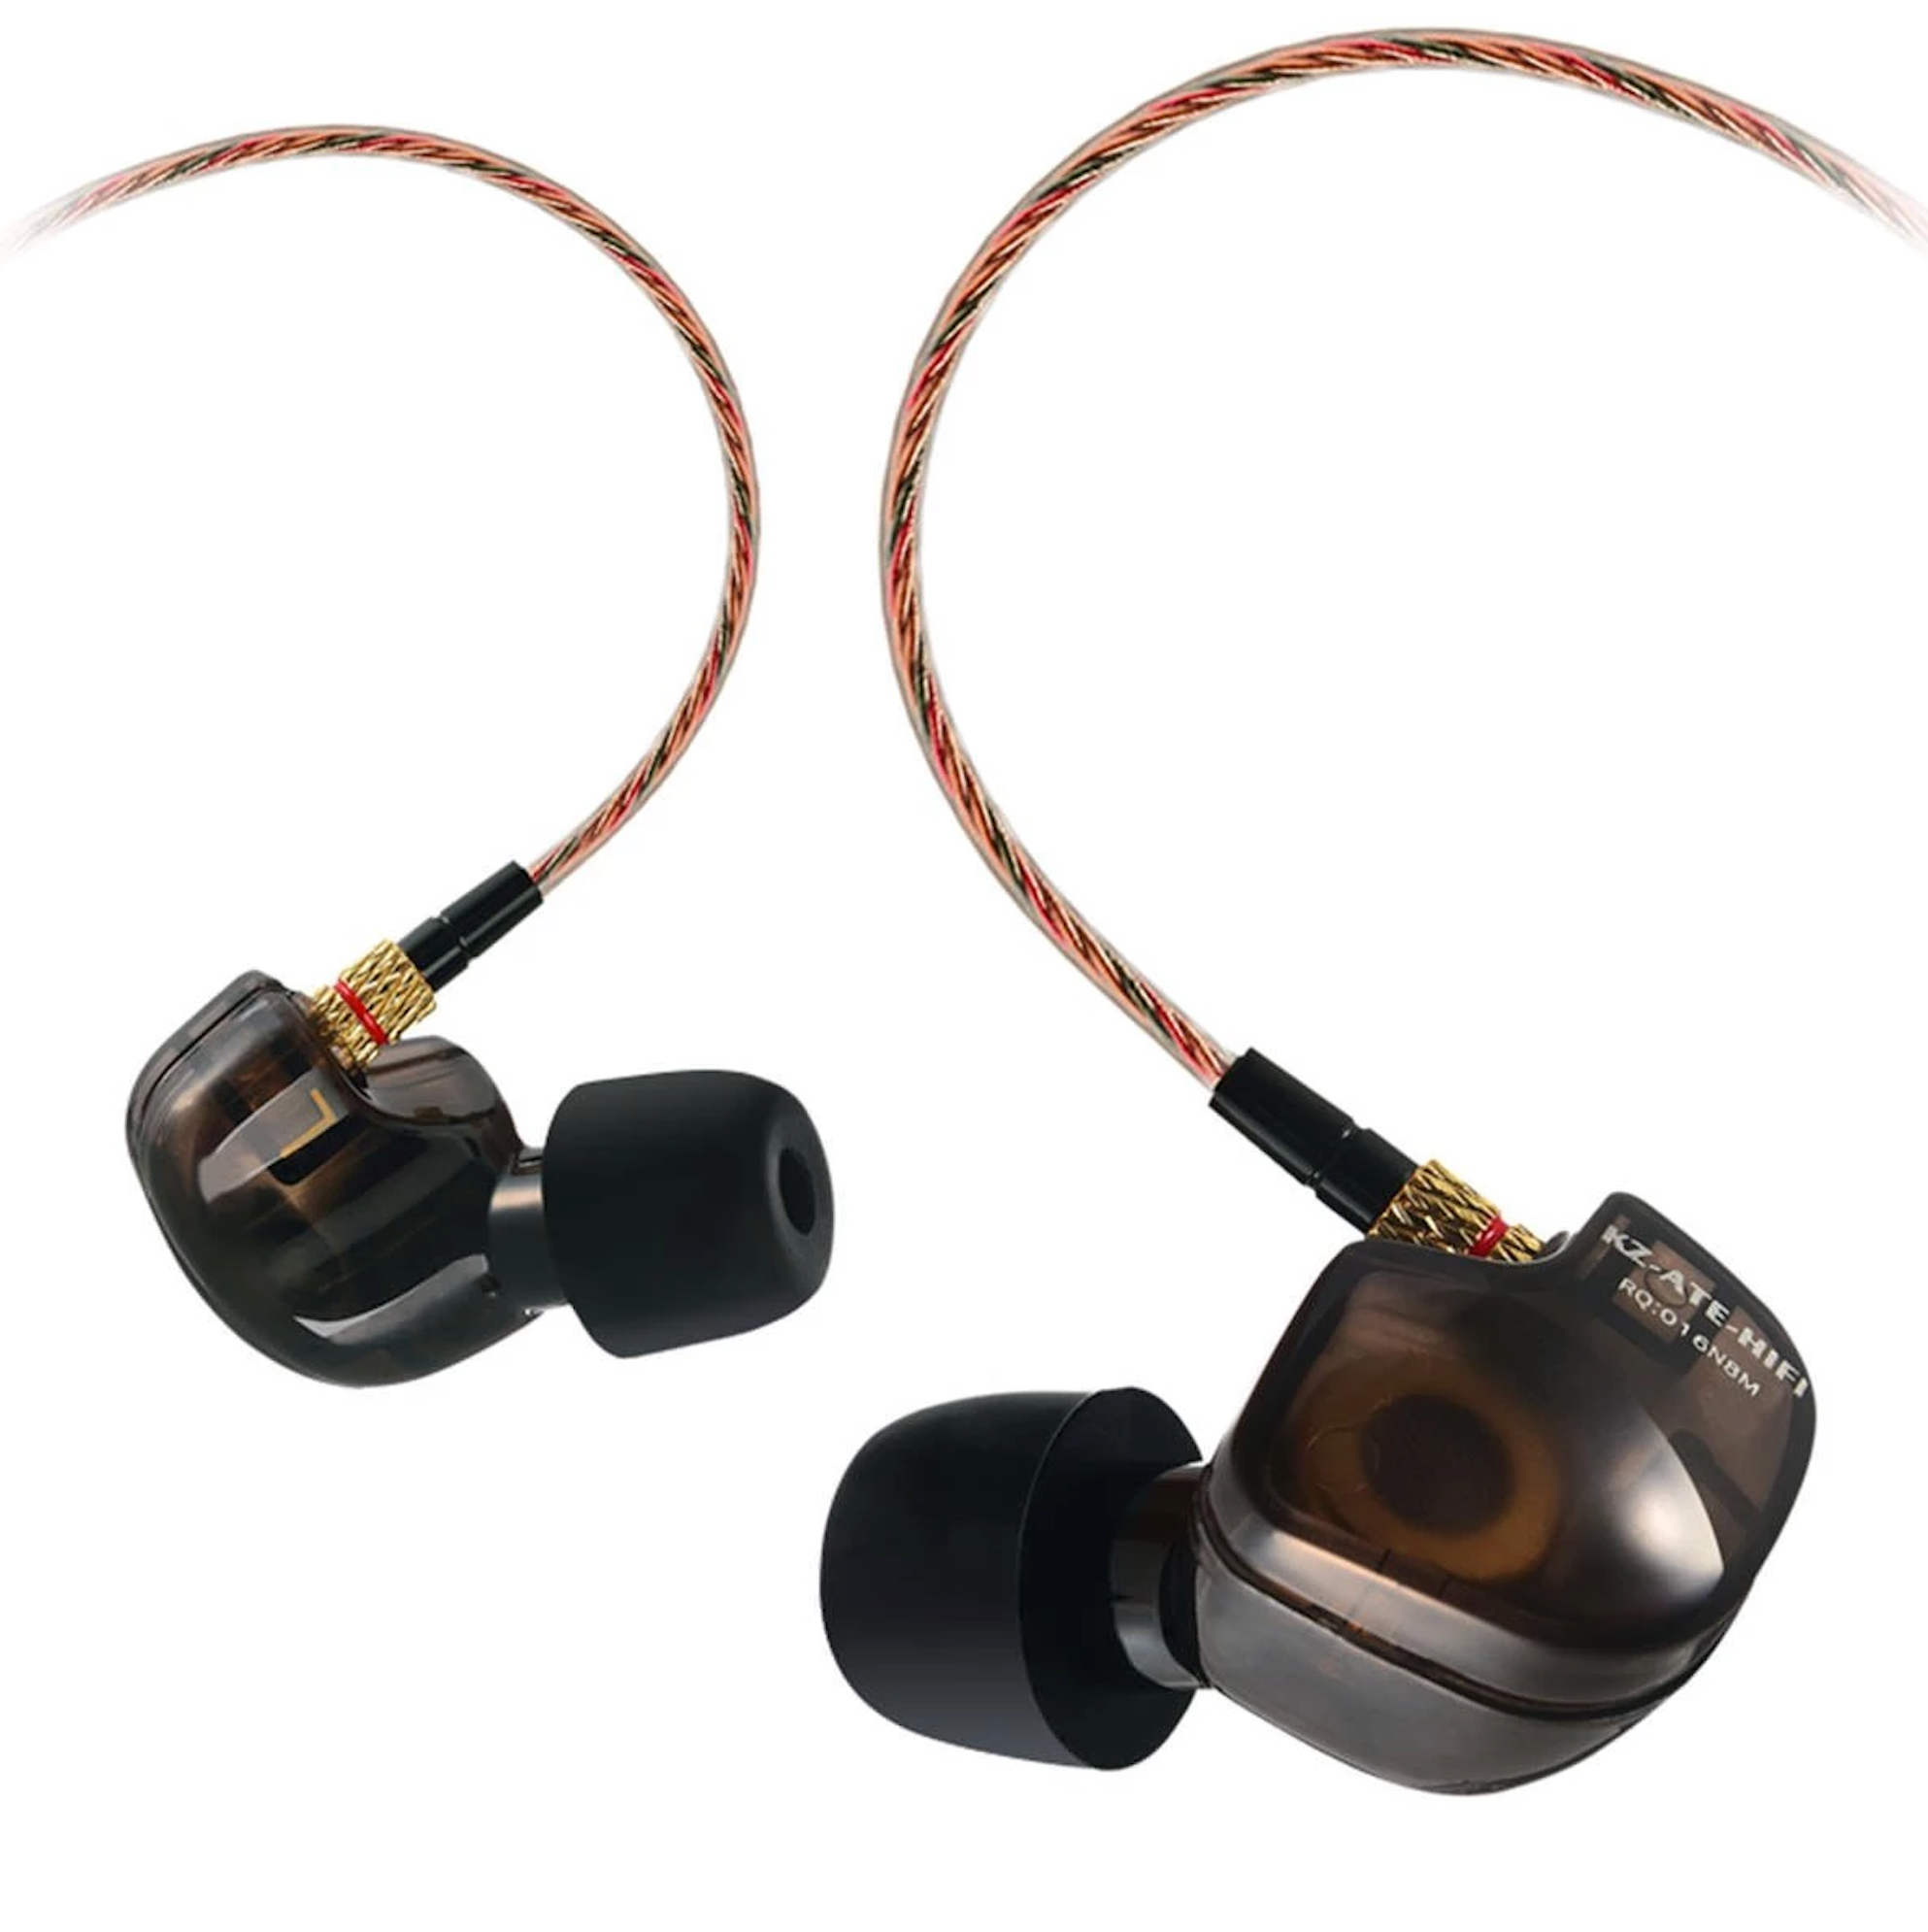 KZ ATE - In-ear earphones - Black